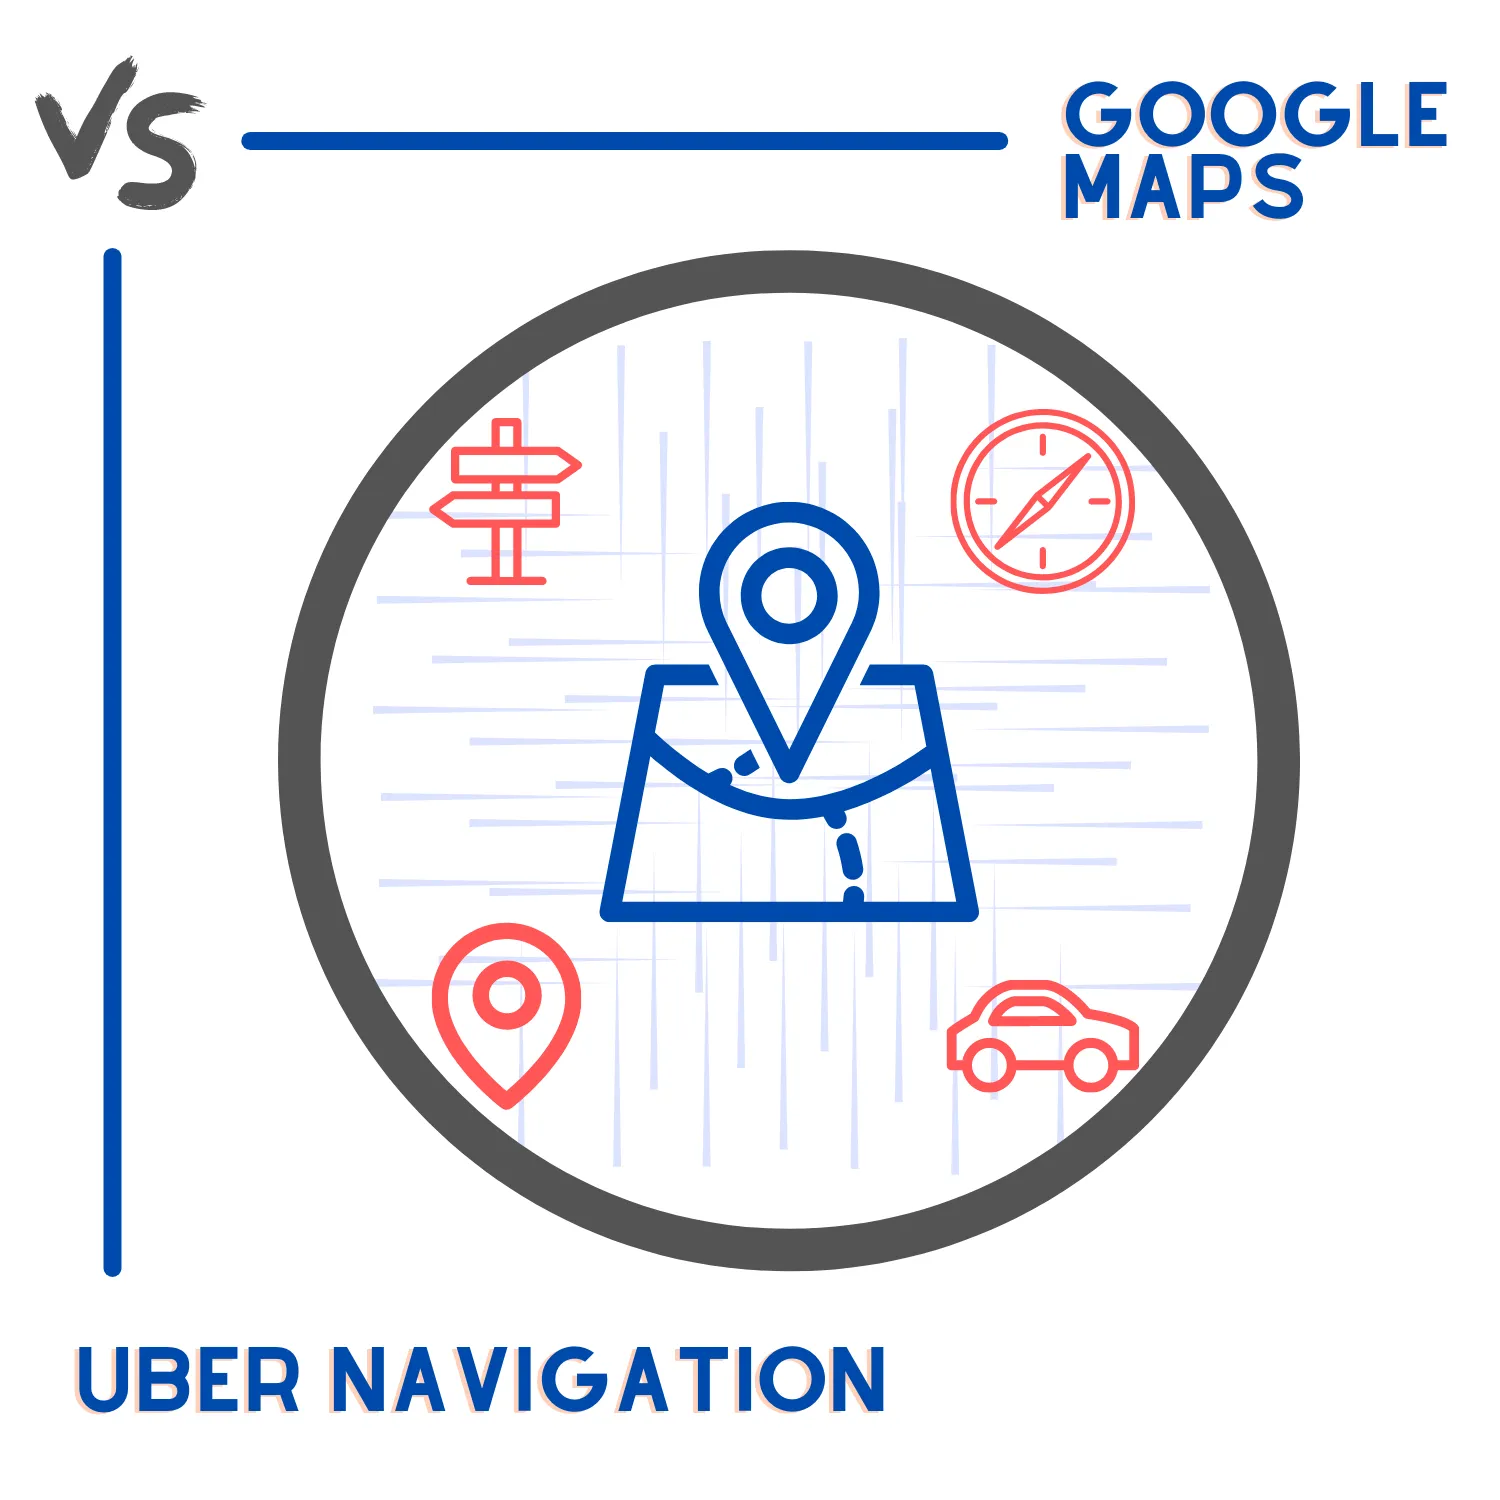 Google Maps vs. Uber Navigation